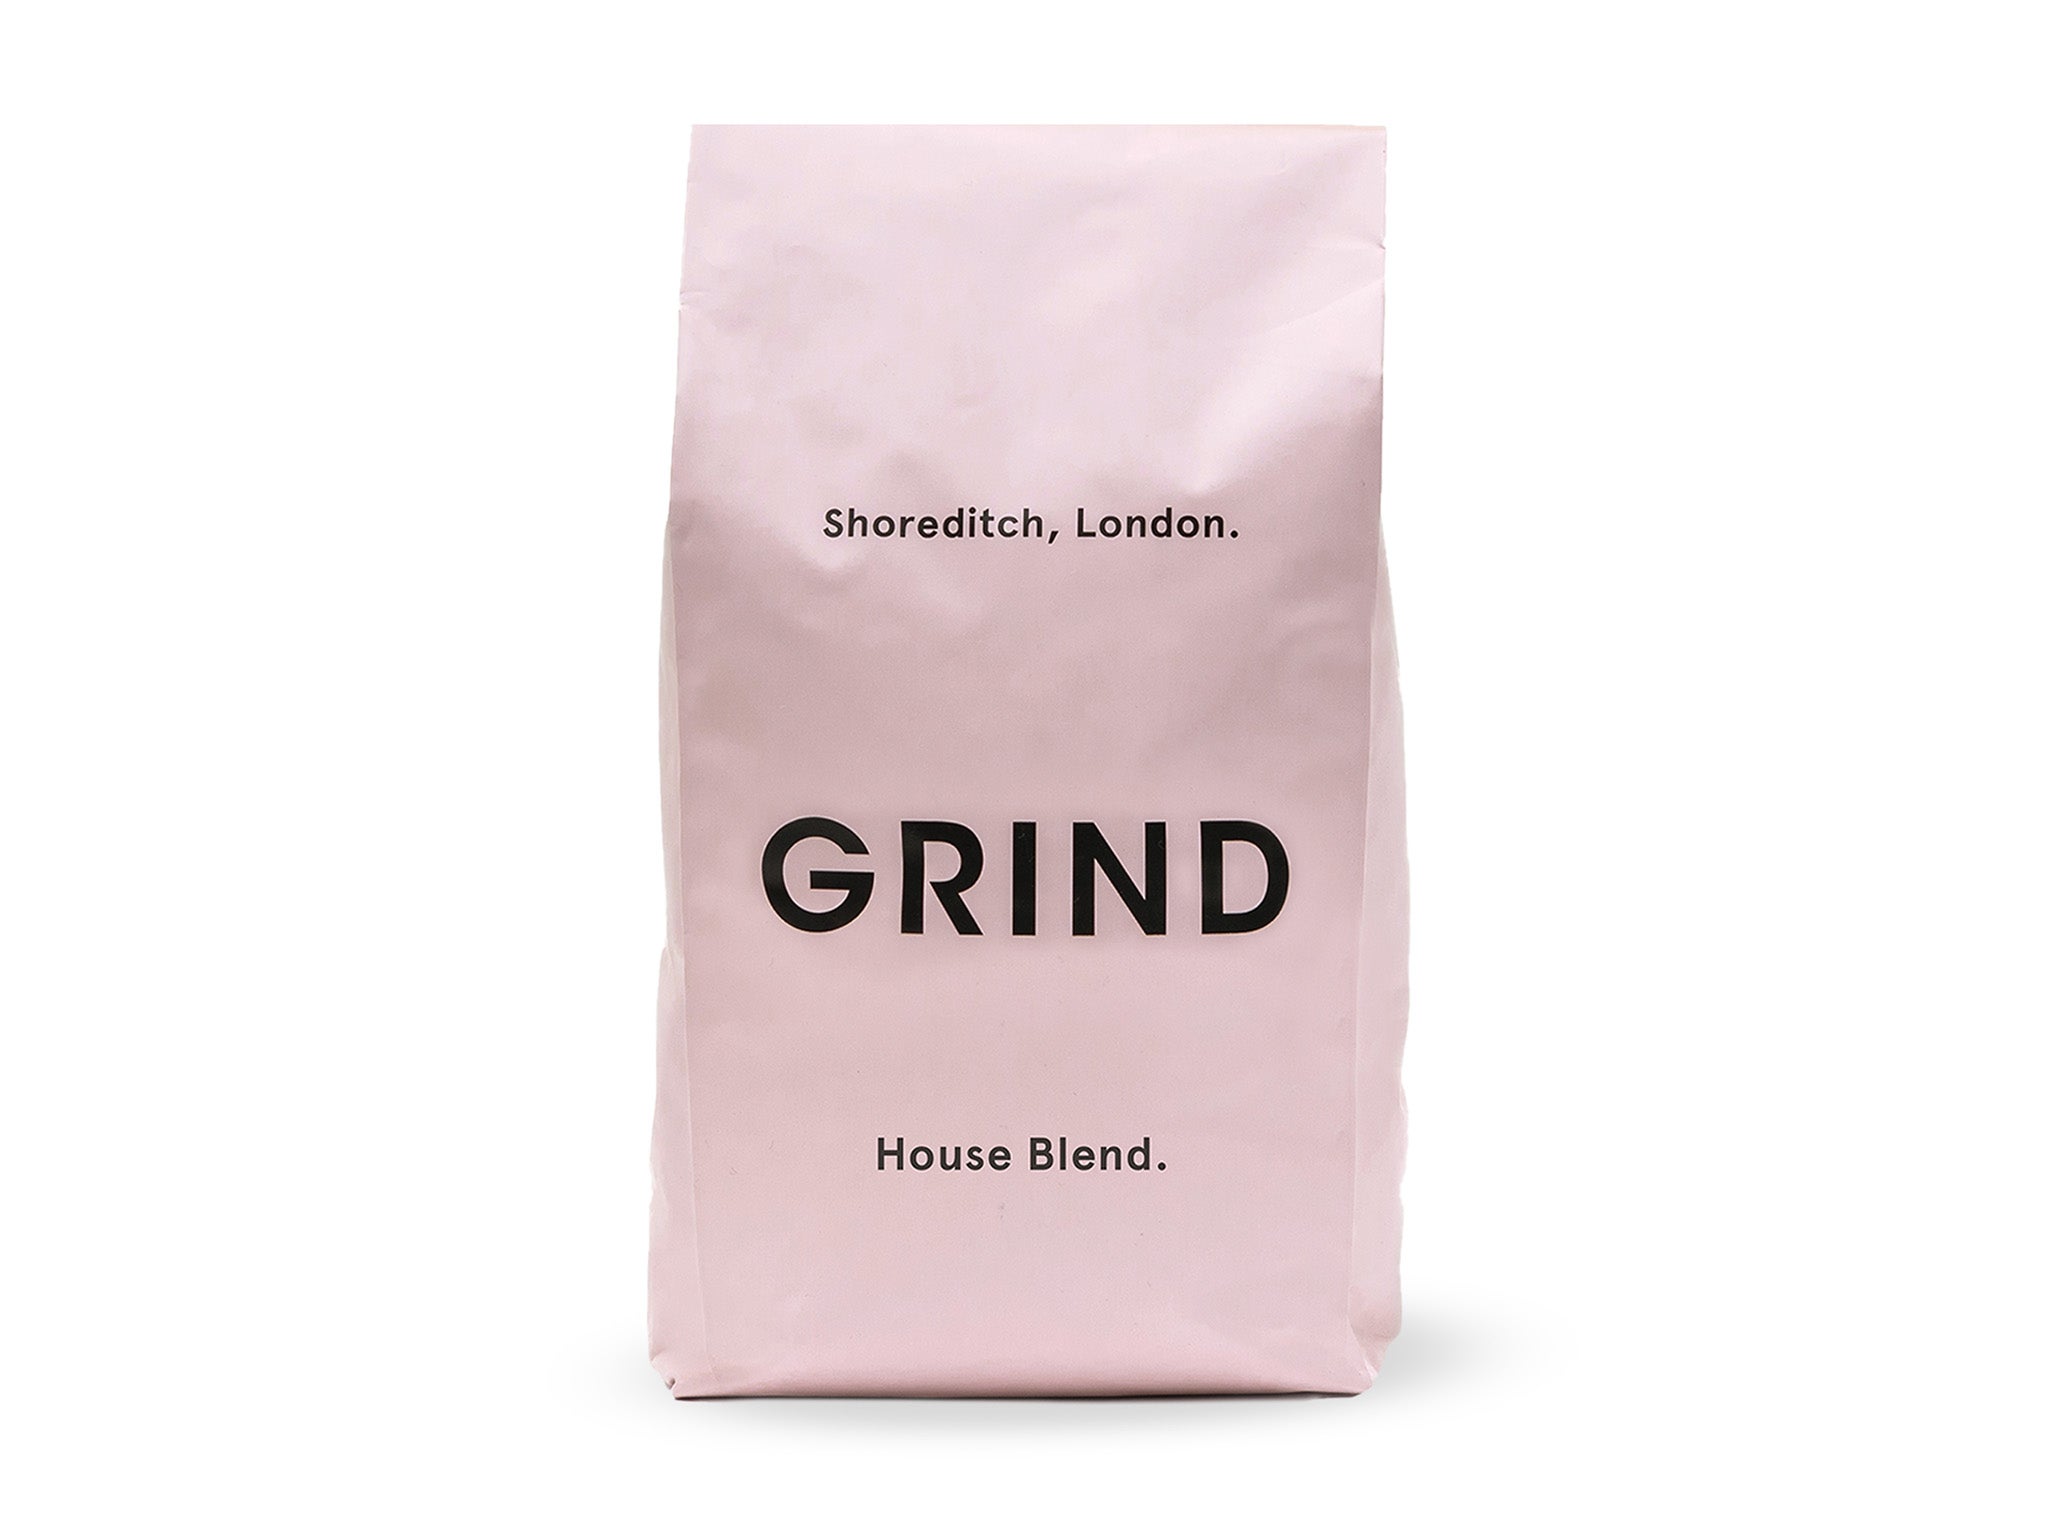 Grind decaf blend coffee